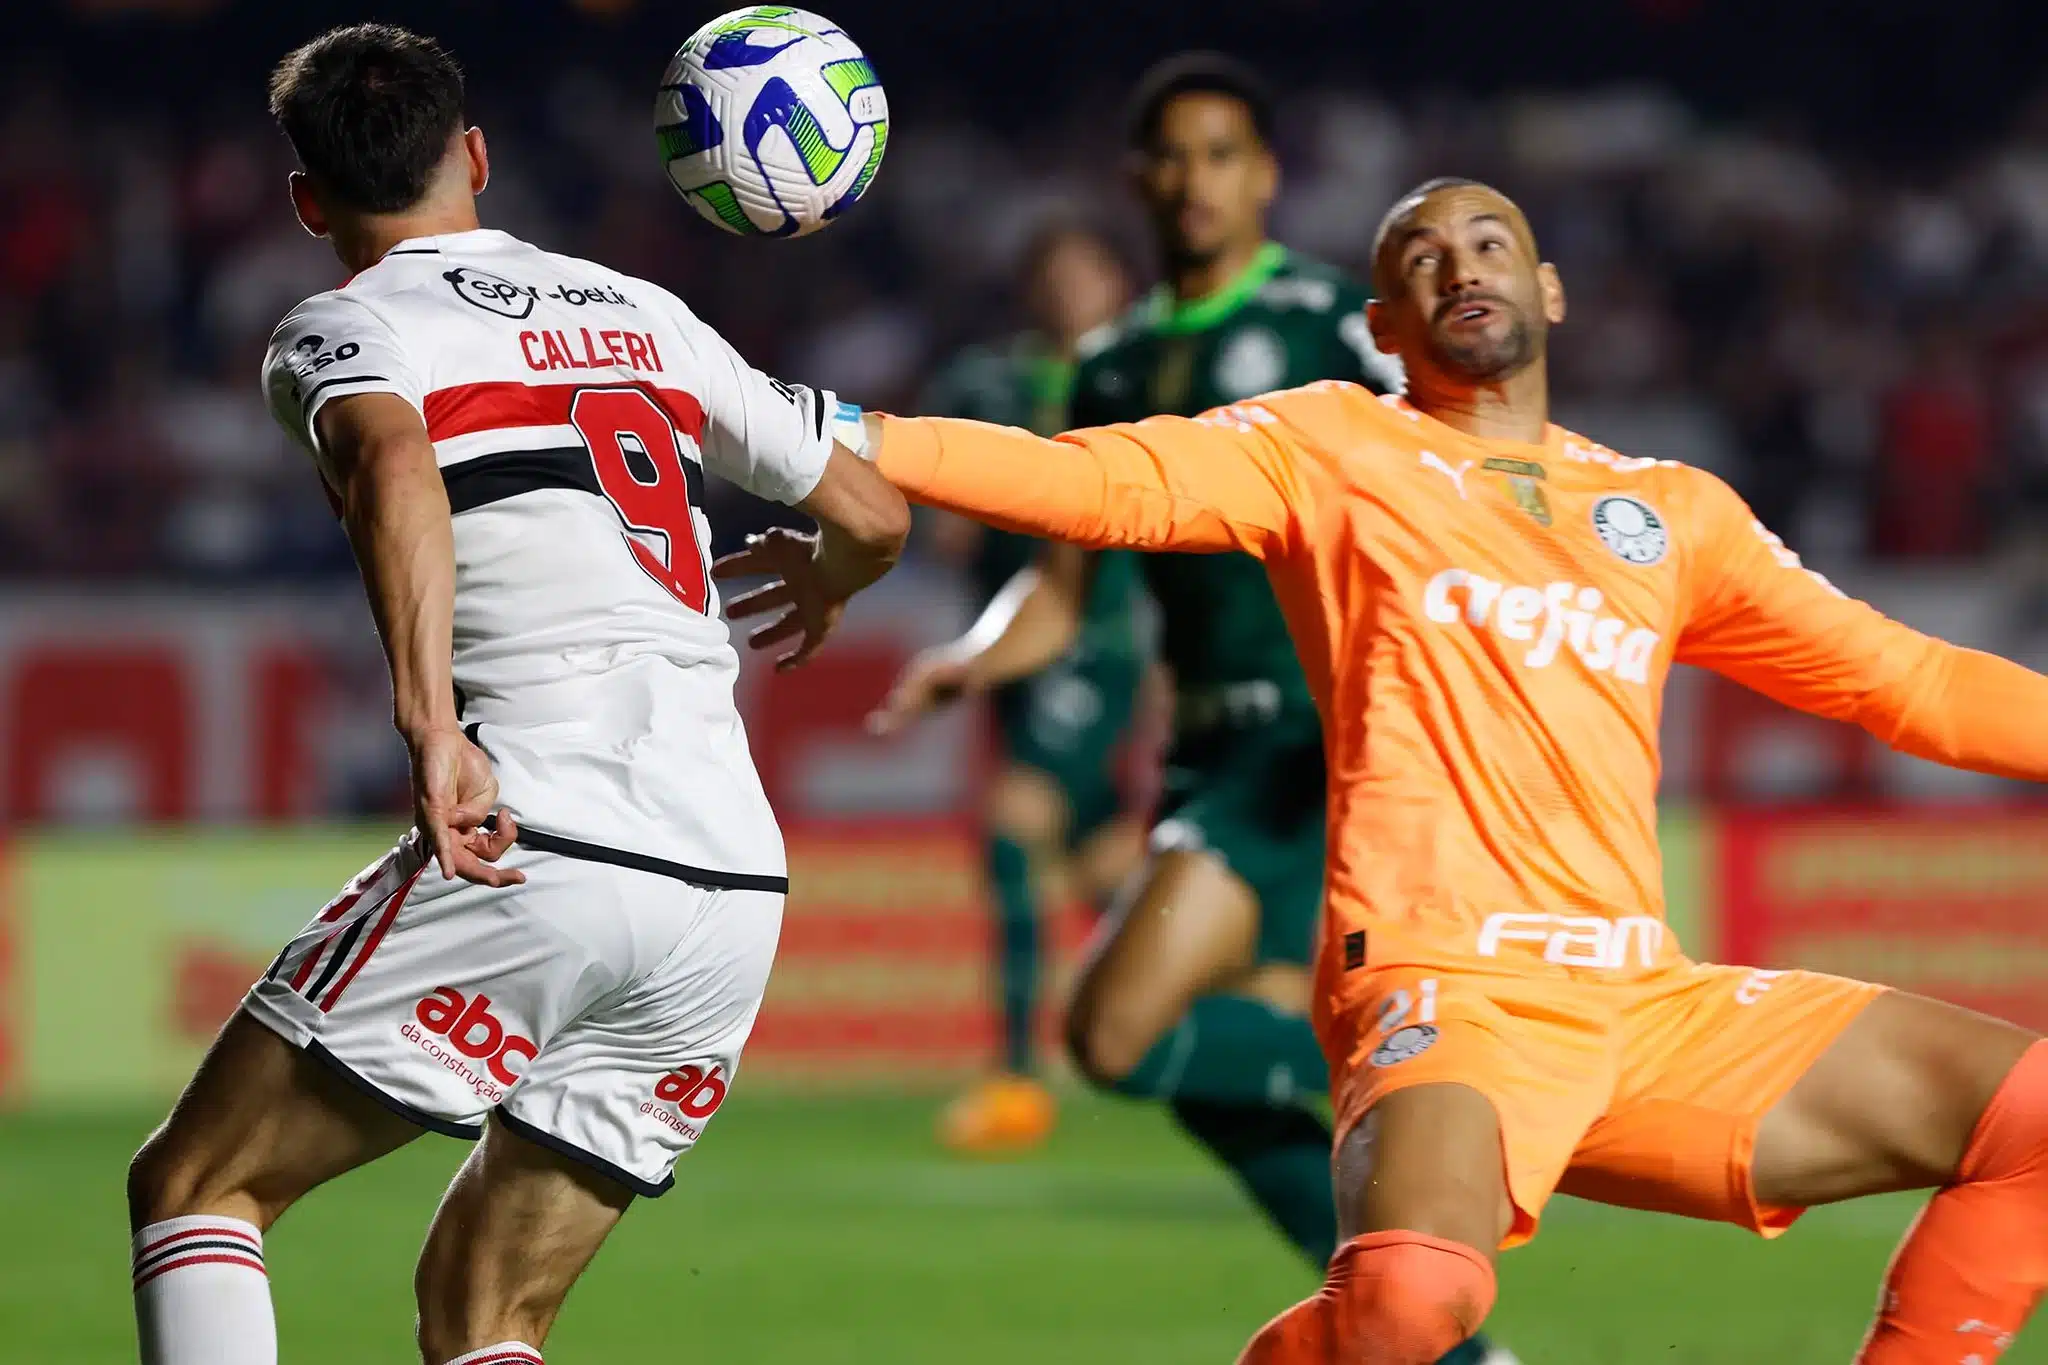 Olhar do adversário: veja a opinião de um torcedor do Palmeiras sobre o jogo contra o São Paulo